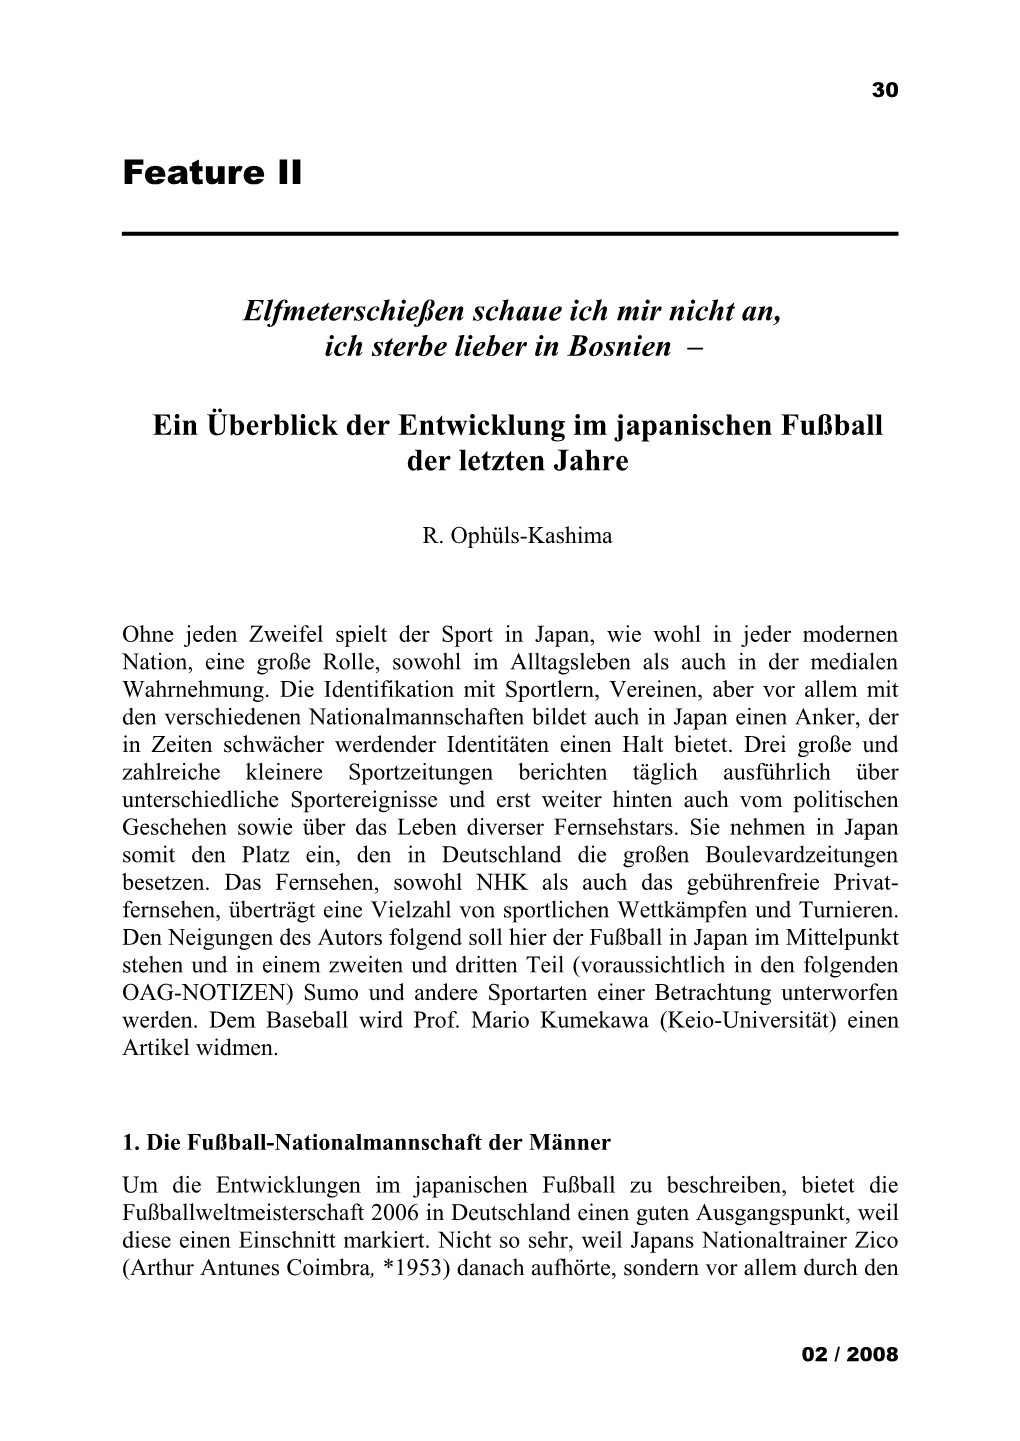 Notizen 0802 Feature Ophüls-Kashima